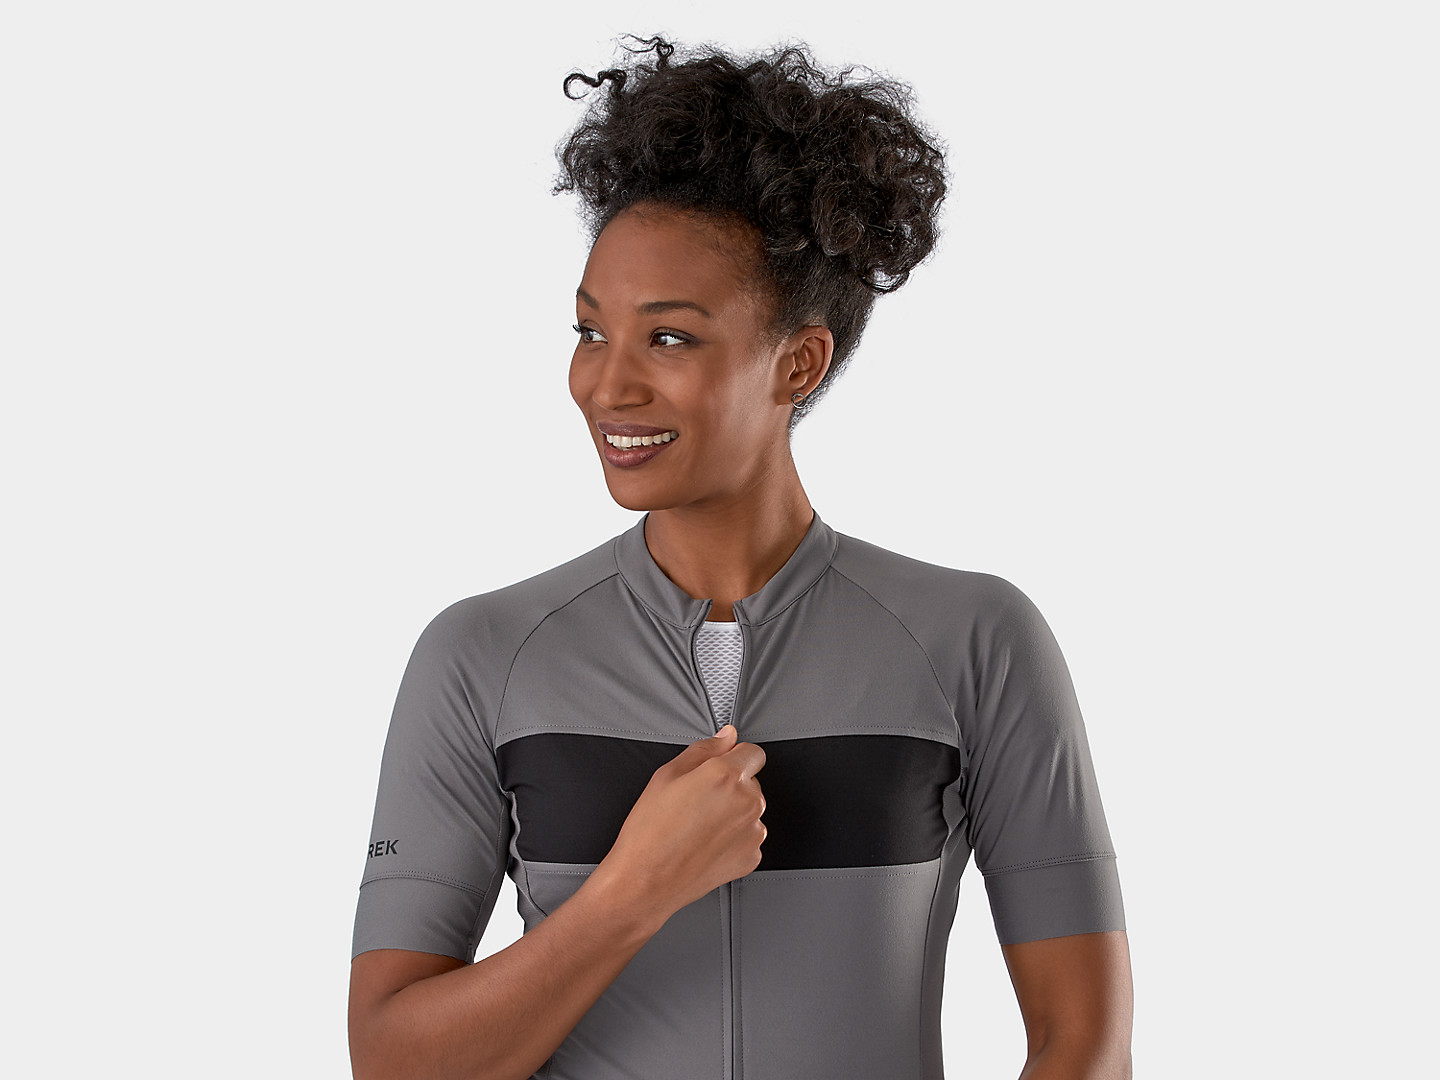 Camiseta feminina para ciclismo Circuit LTD Trek